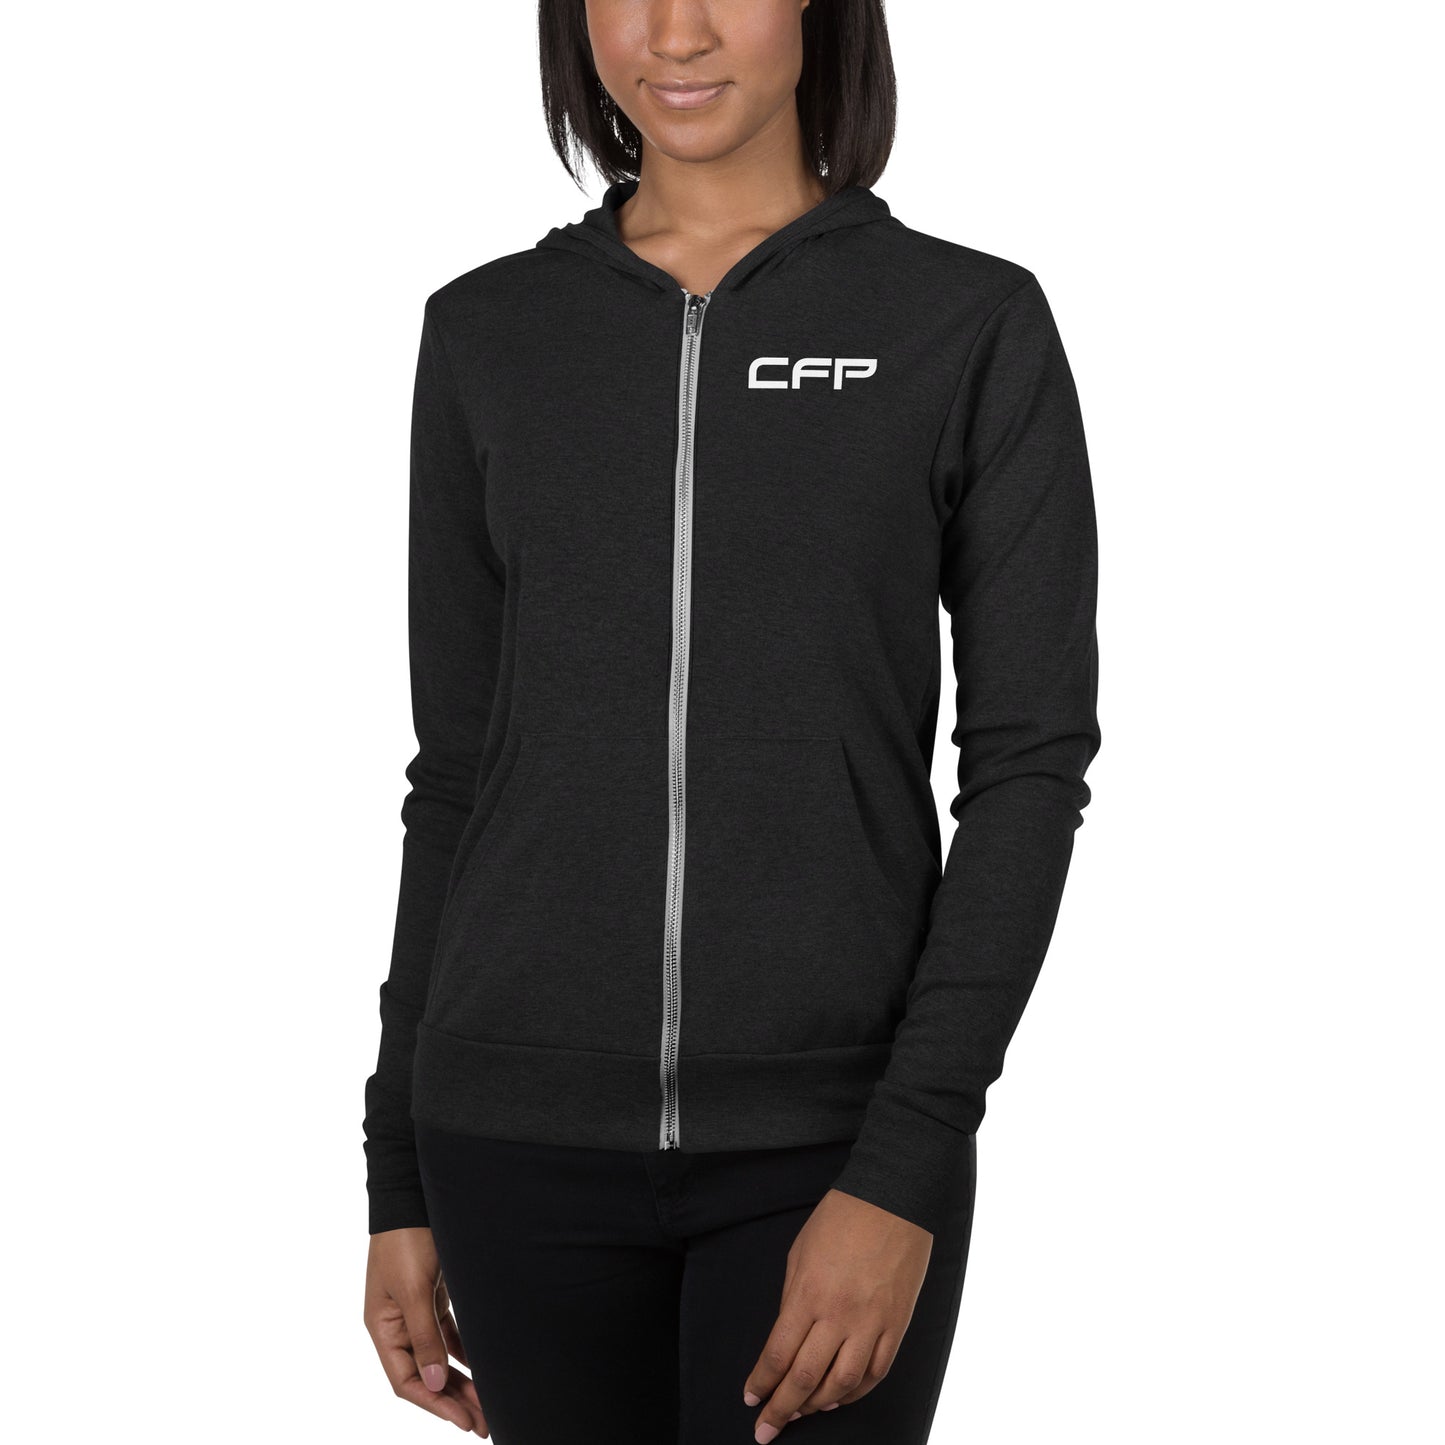 CFP Lightweight zip hoodie